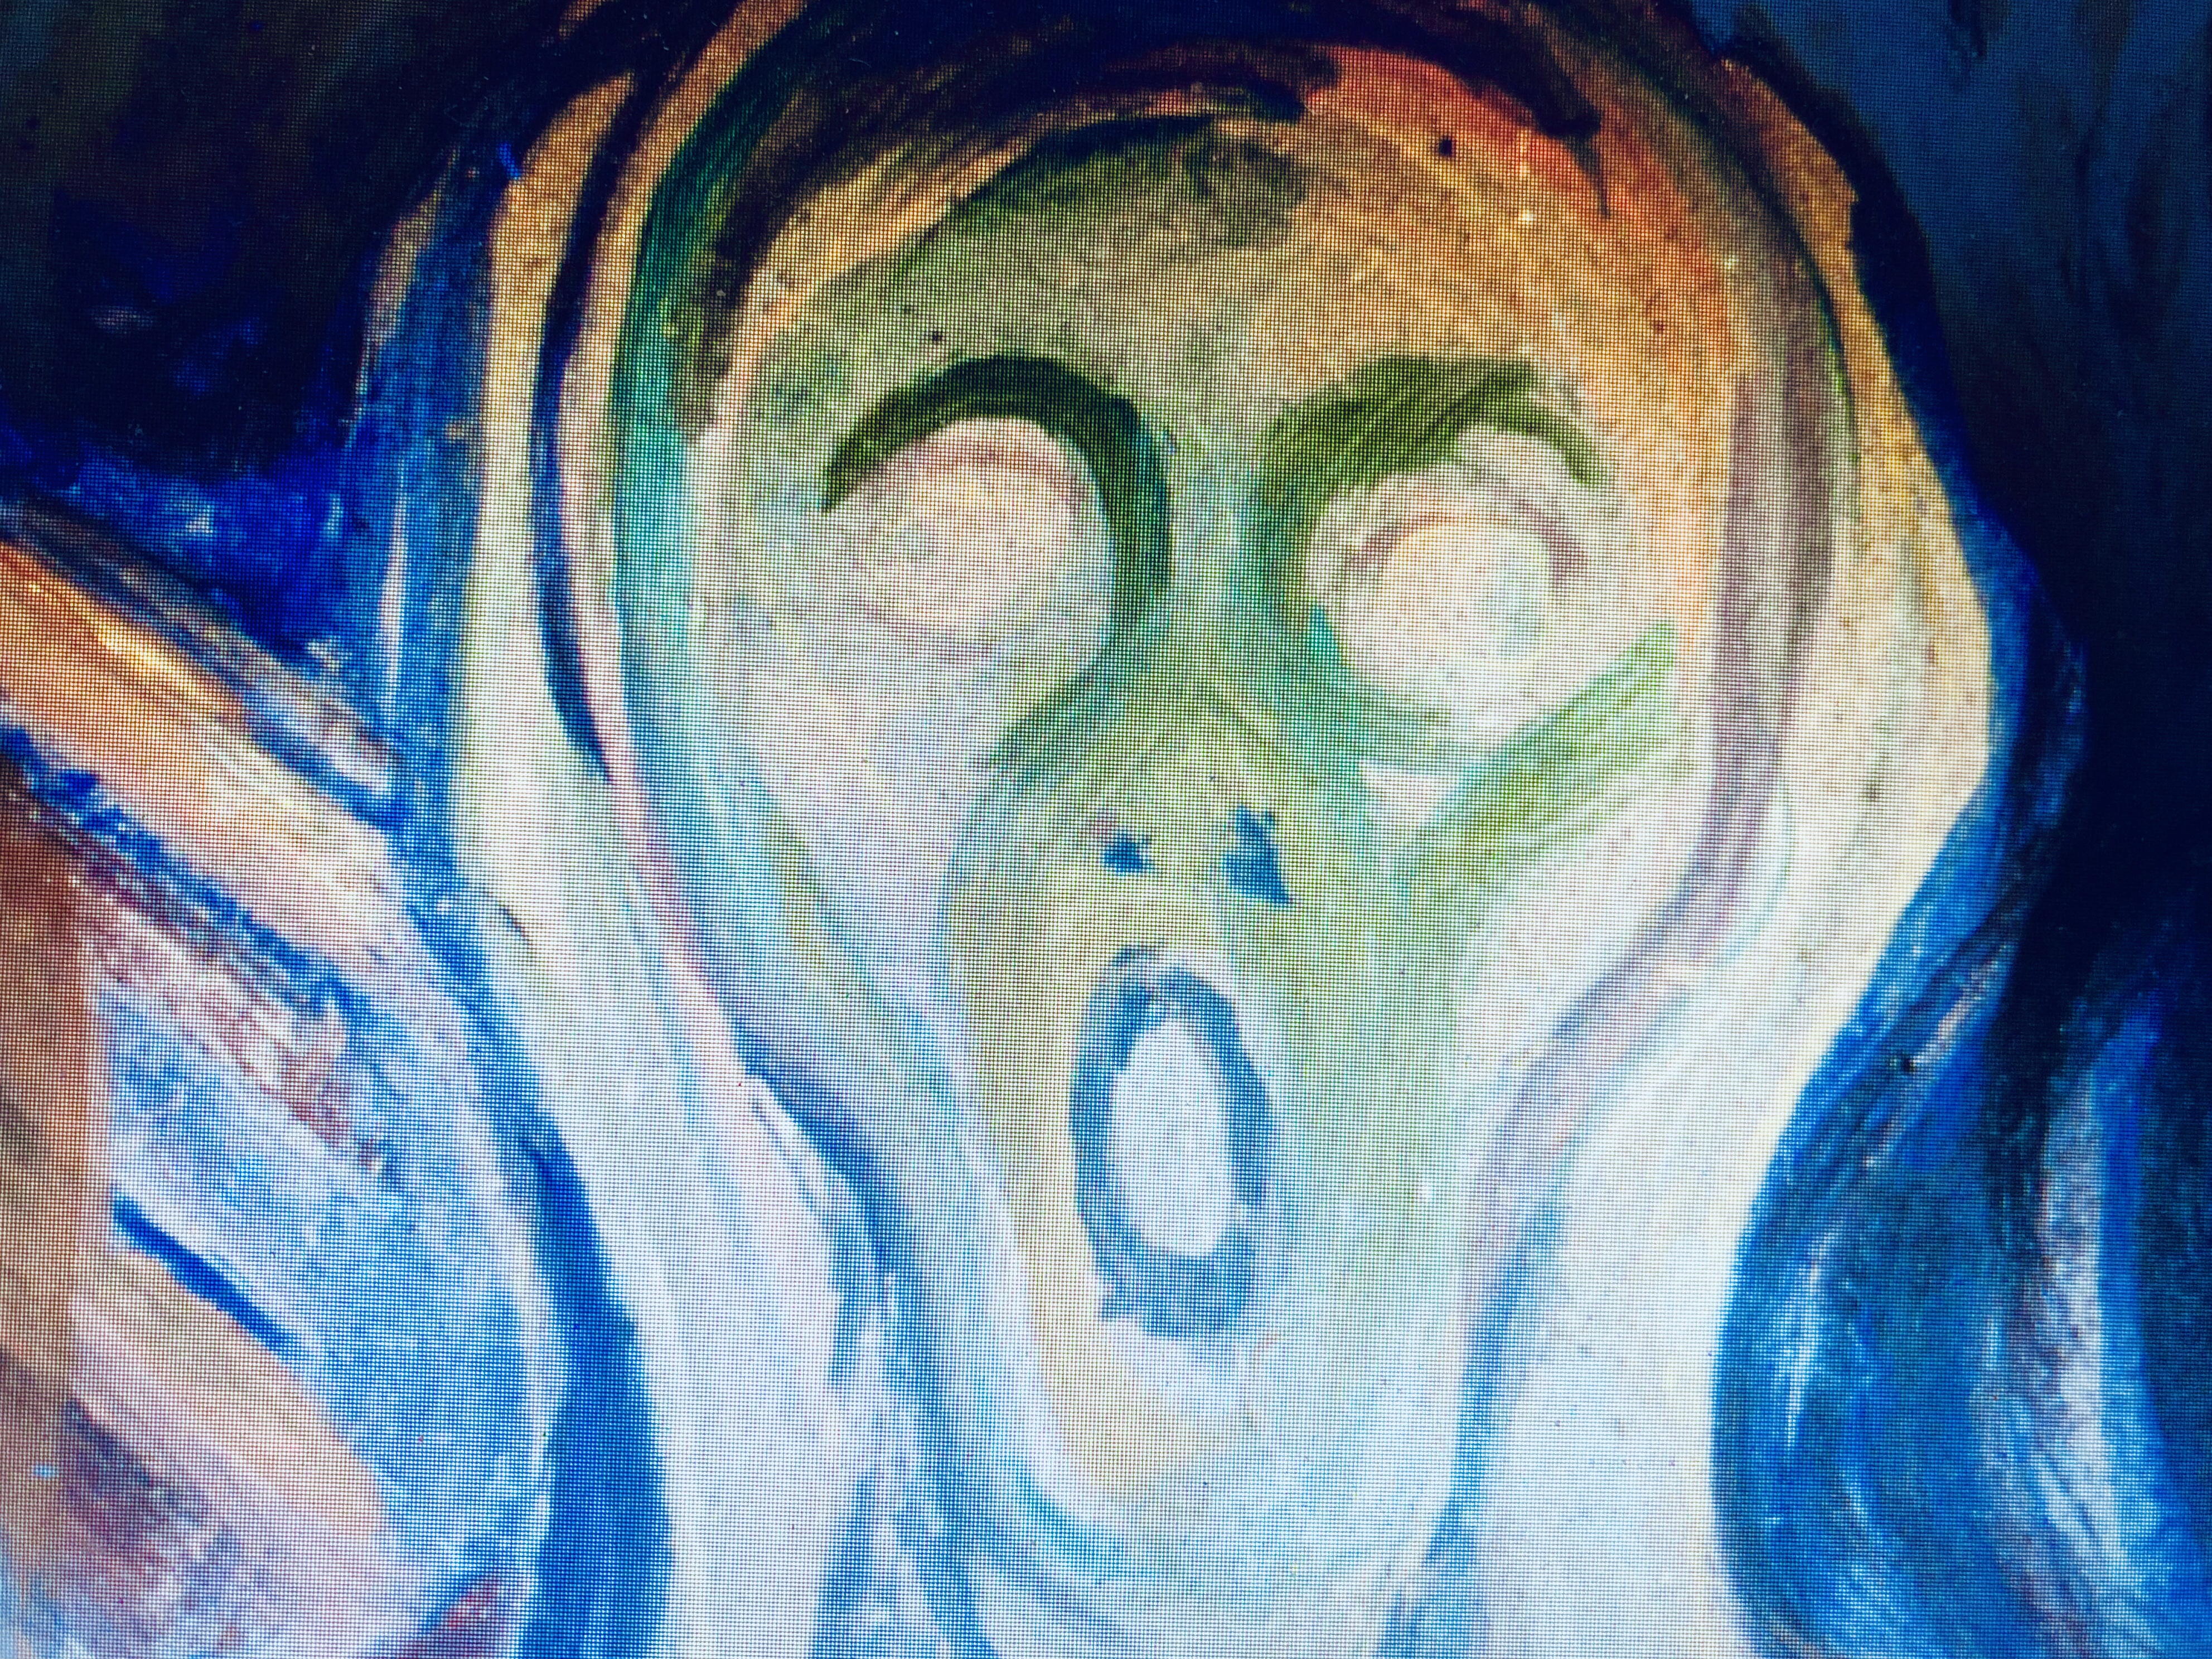 Abbildung zum Beitrag über Munchs Schrei hören